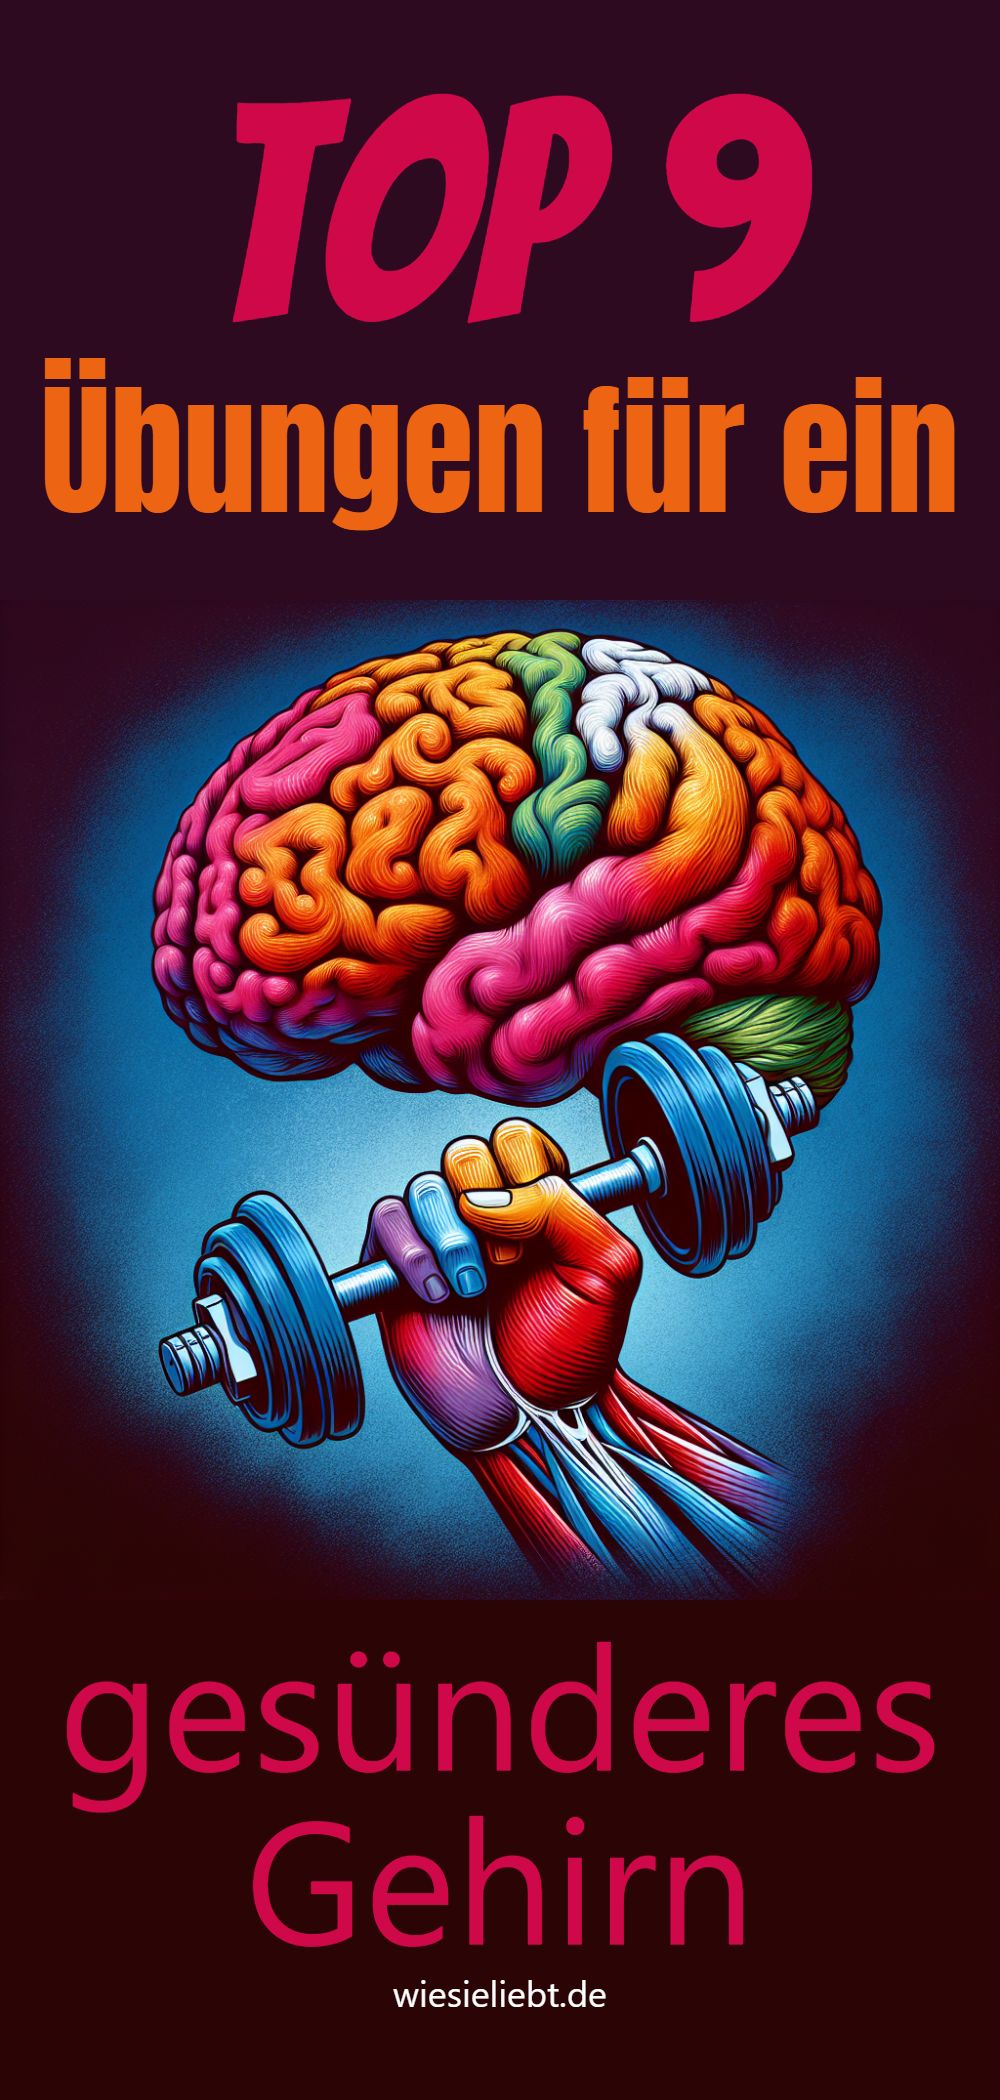 Top 9 Übungen für ein gesünderes Gehirn